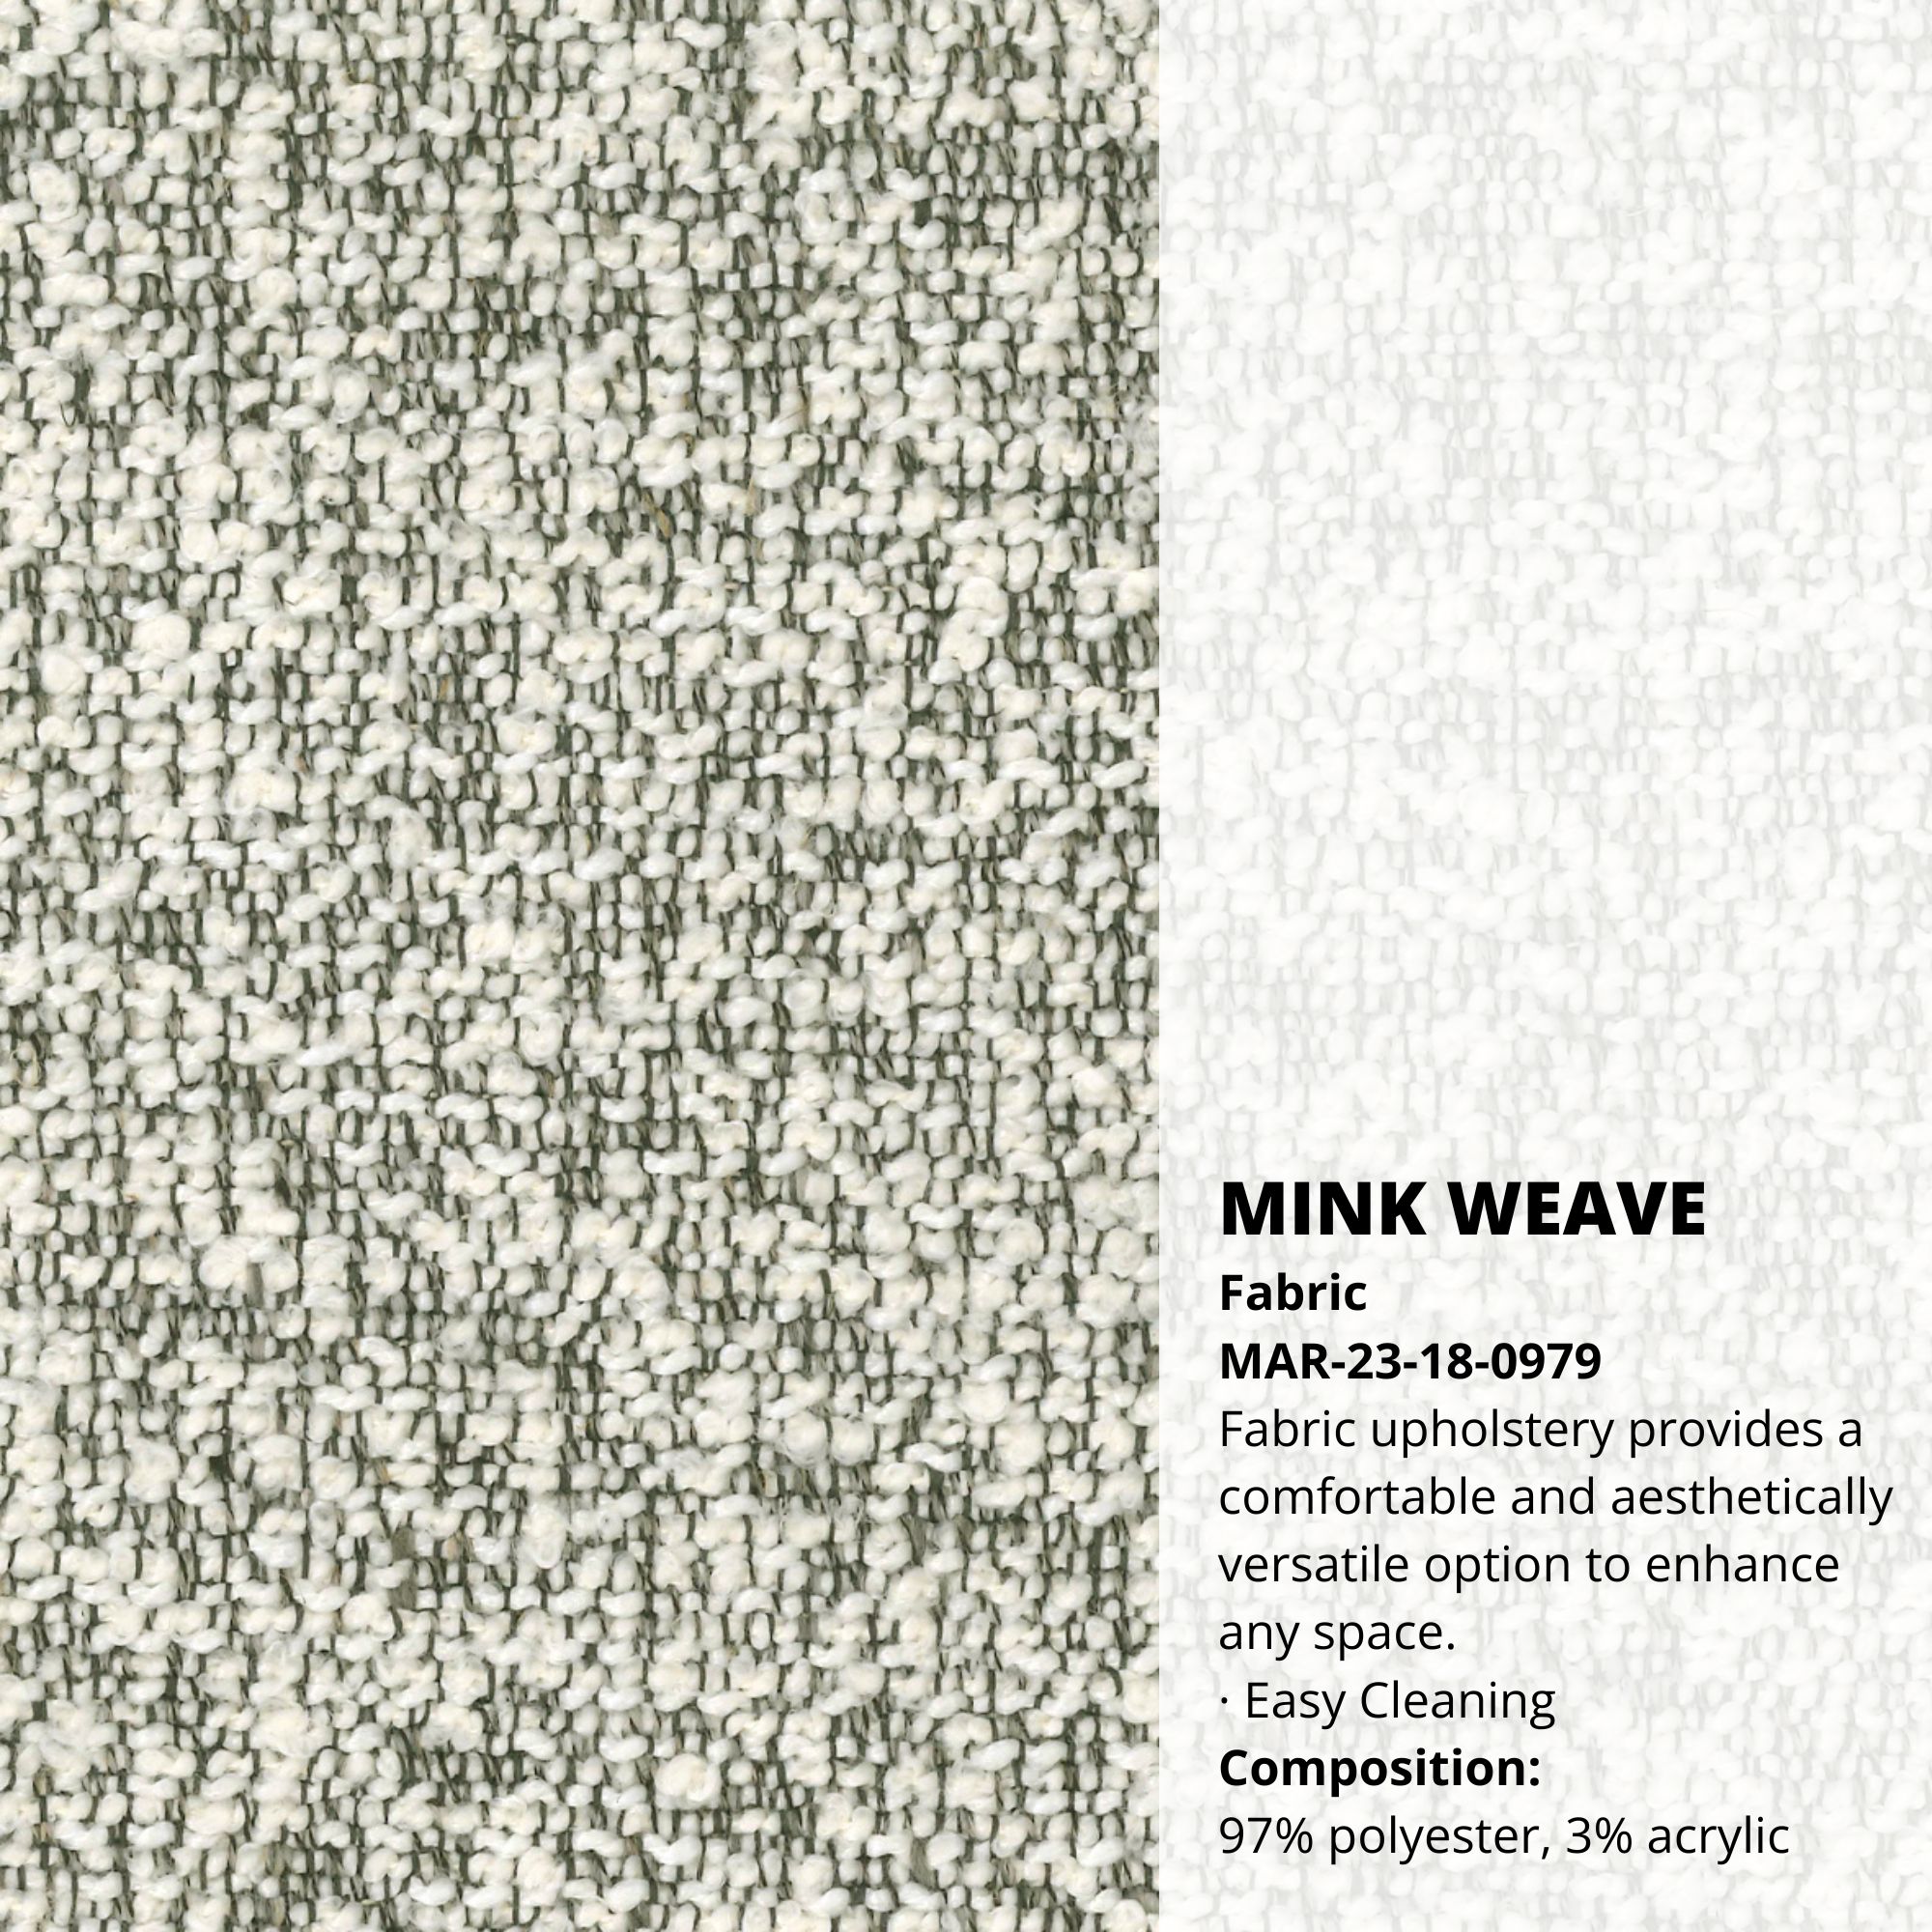 Mink Weave